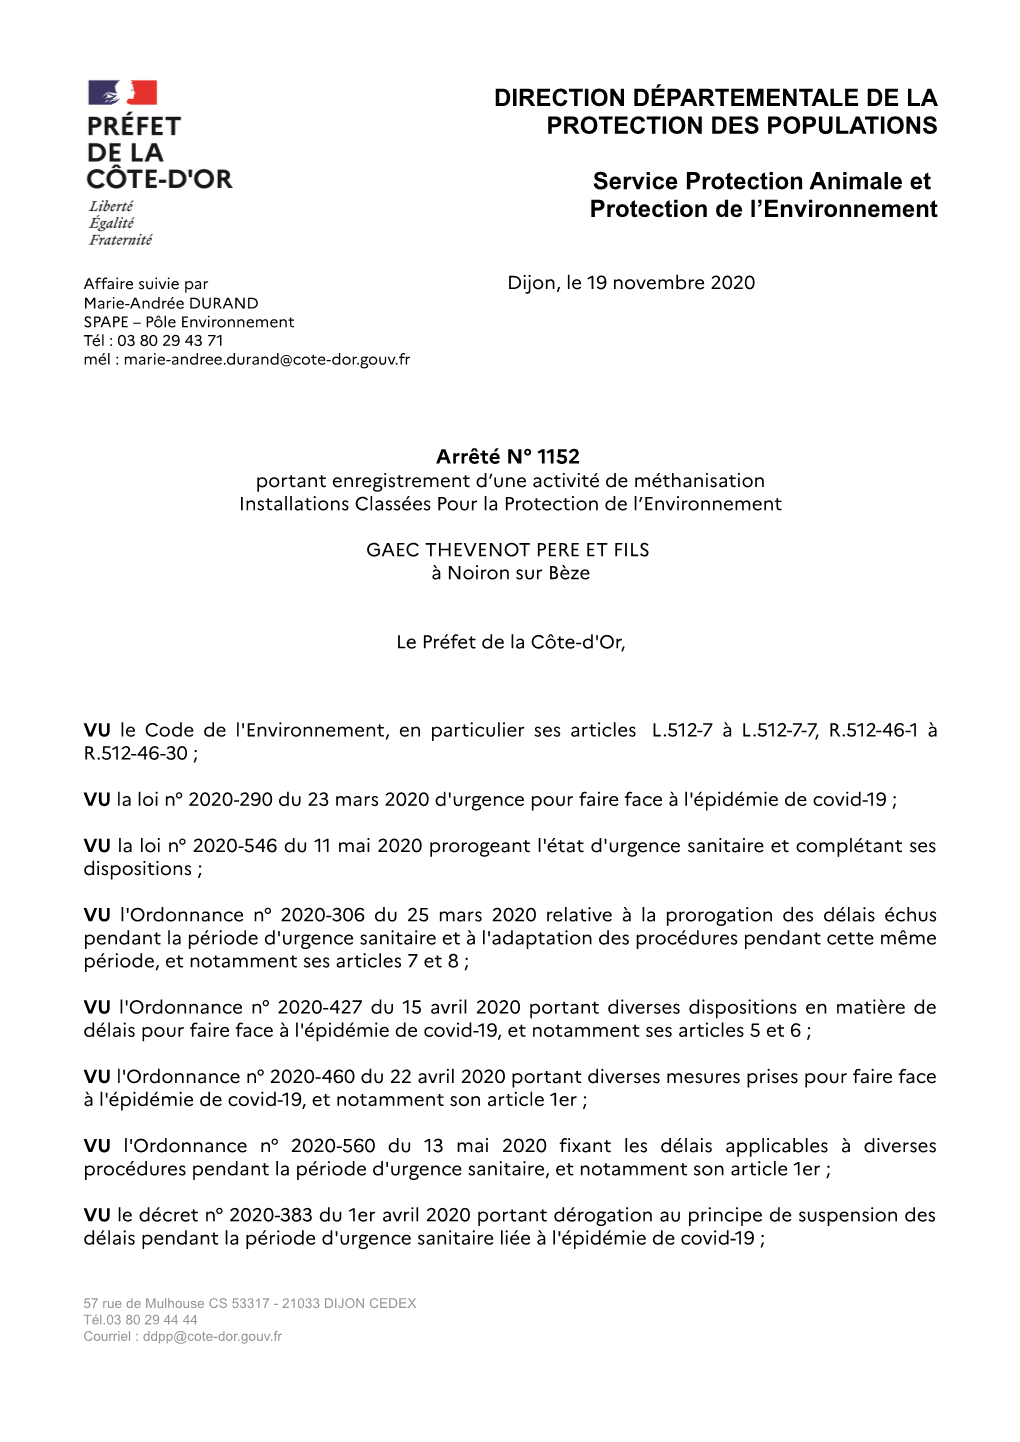 Arrêté Préfectoral D'enregistrement En Date Du 19/11/2020